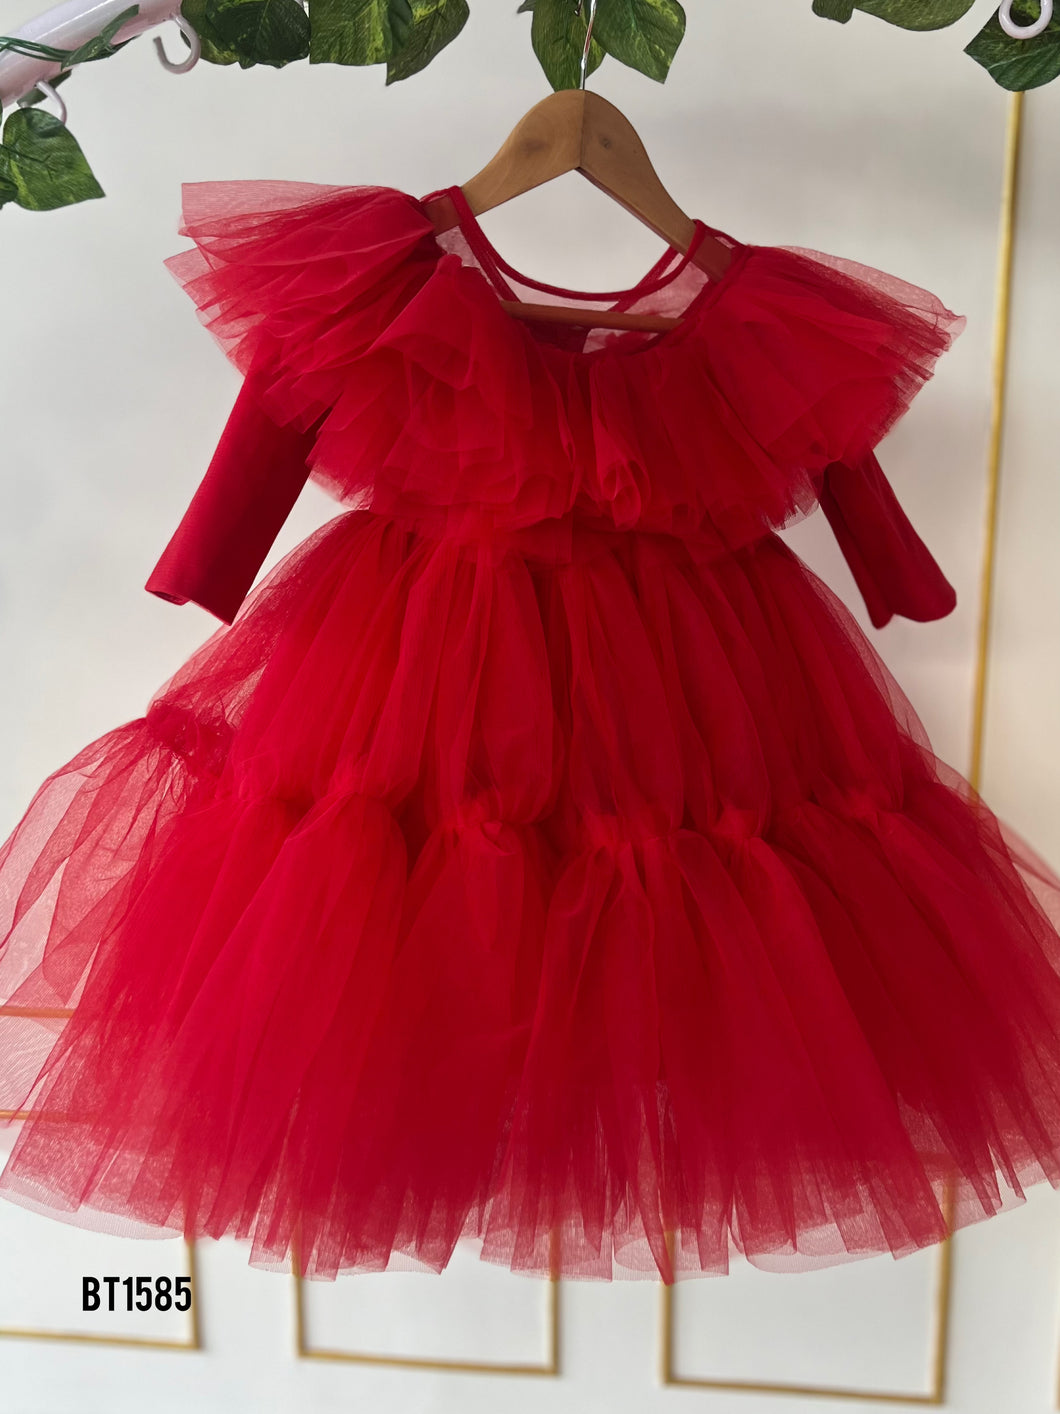 BT1585 Crimson Ruffle Delight Dress for Joyful Celebrations